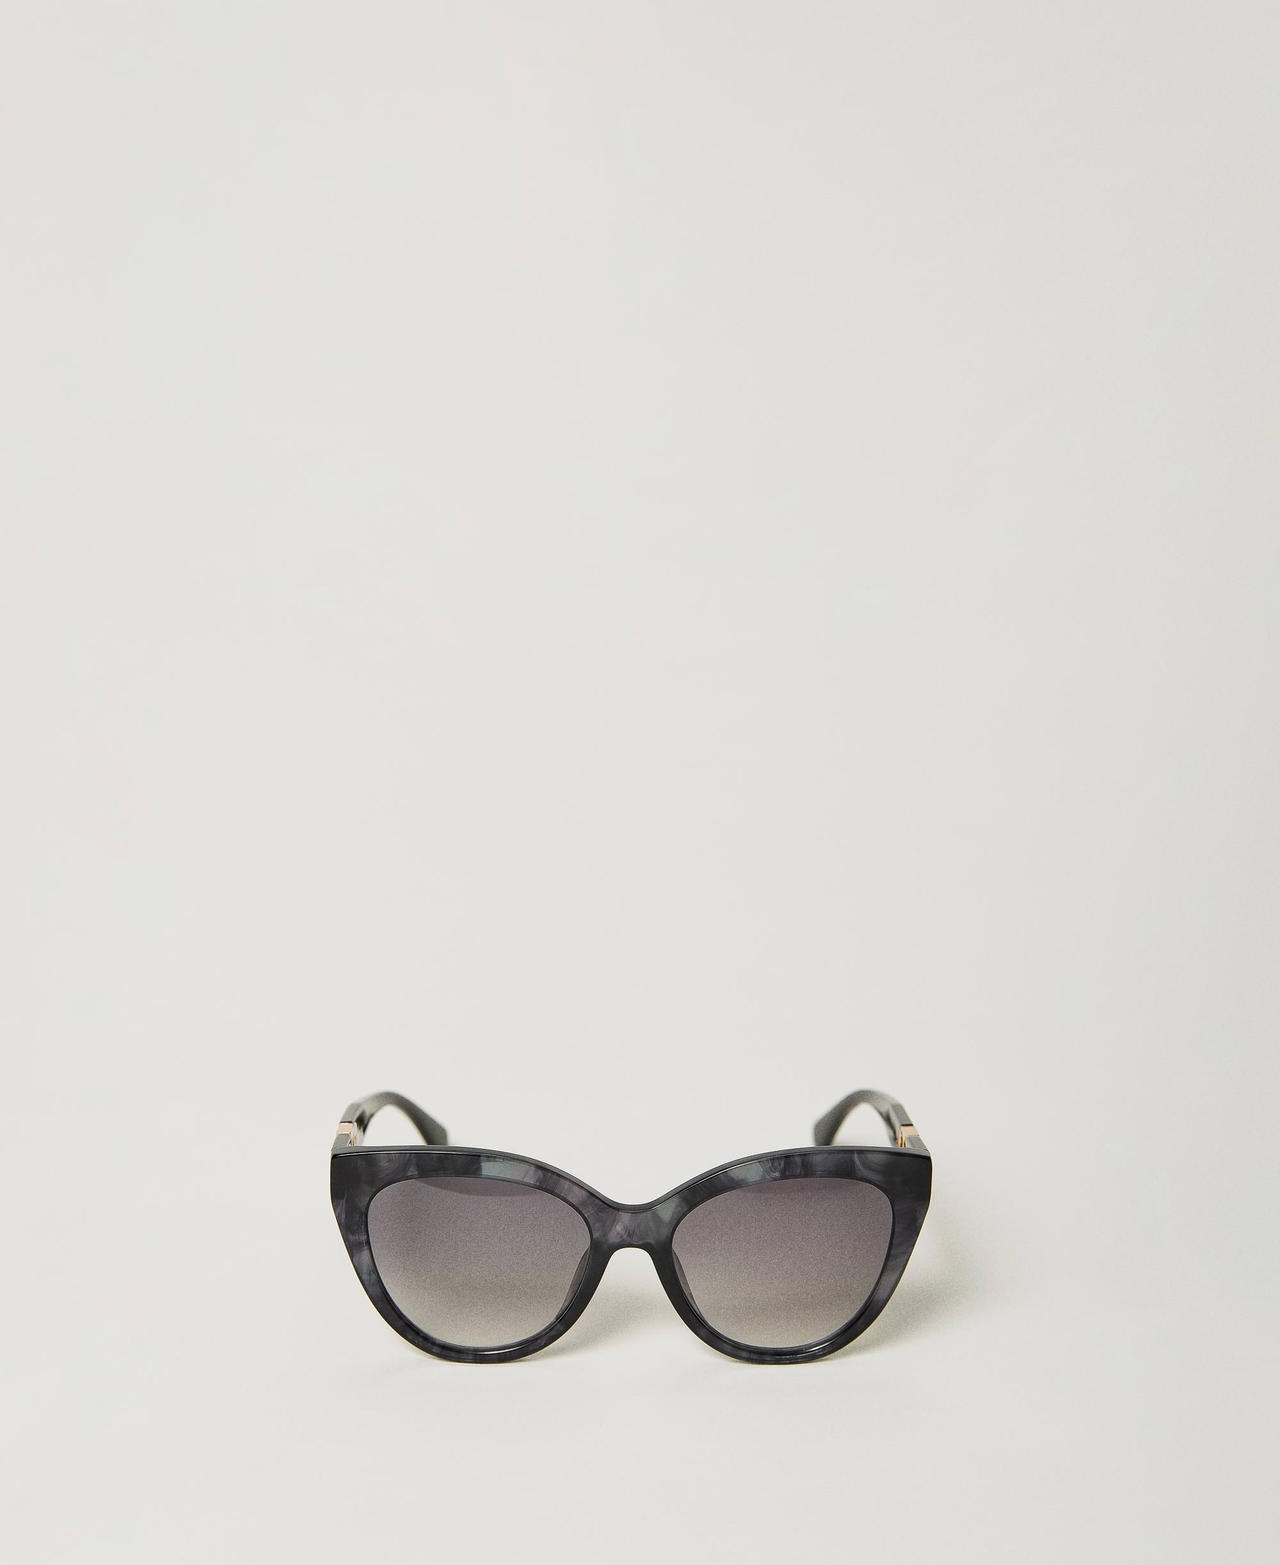 twinset accessori - occhiali da sole cat-eye con strass, black grey, taglia unica donna